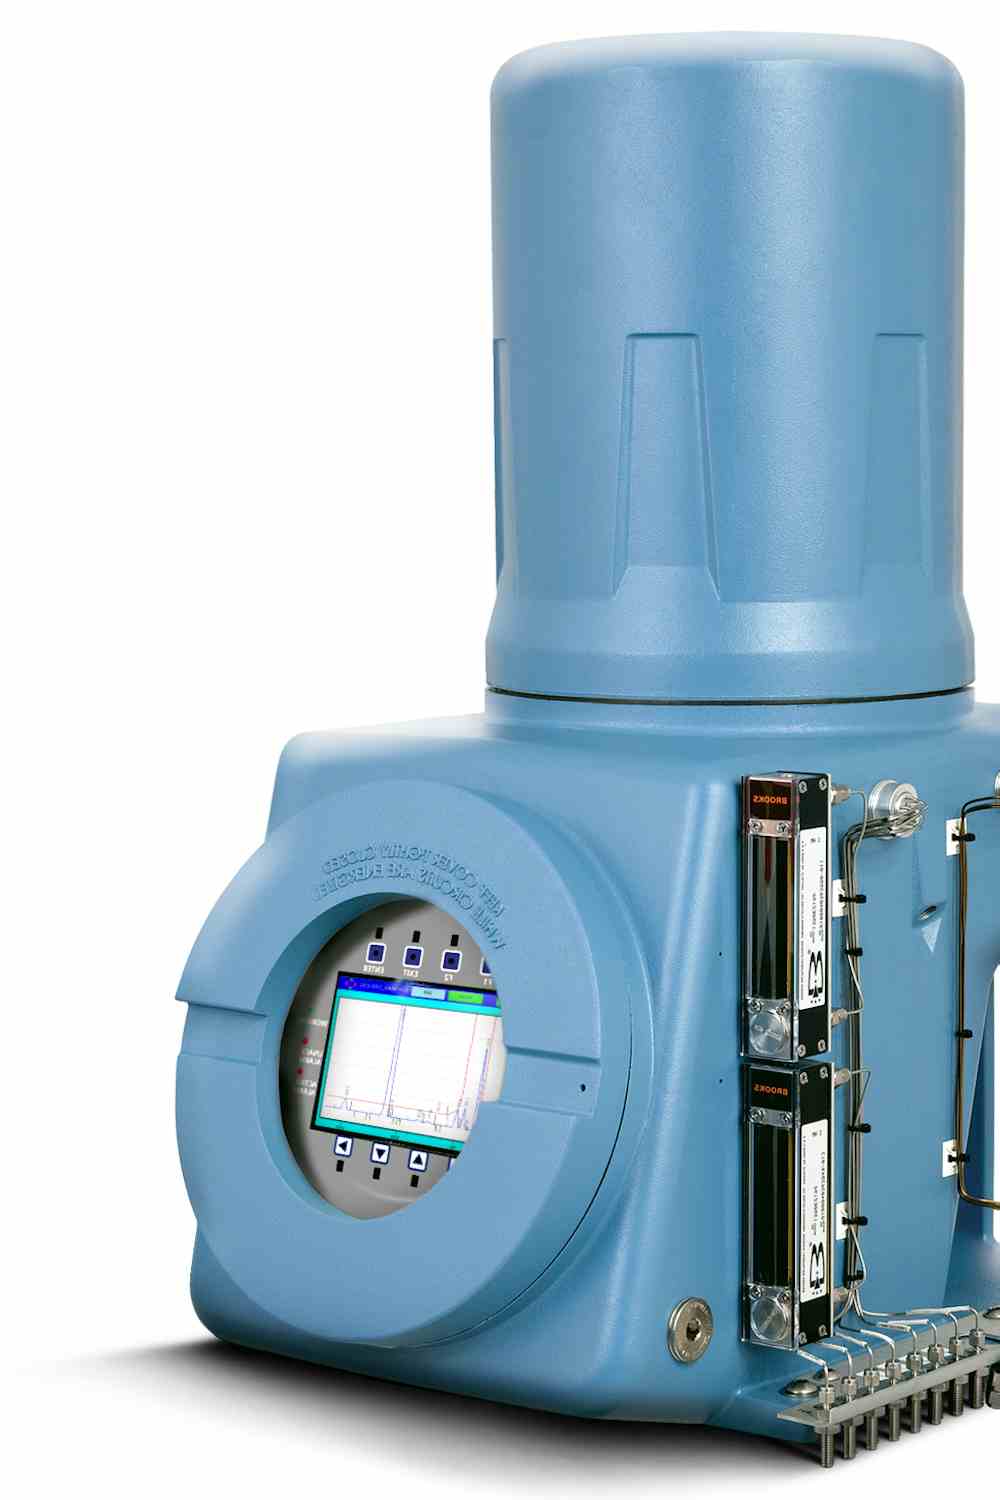 Espectrometro de gas para analizar la calidad de gas natural